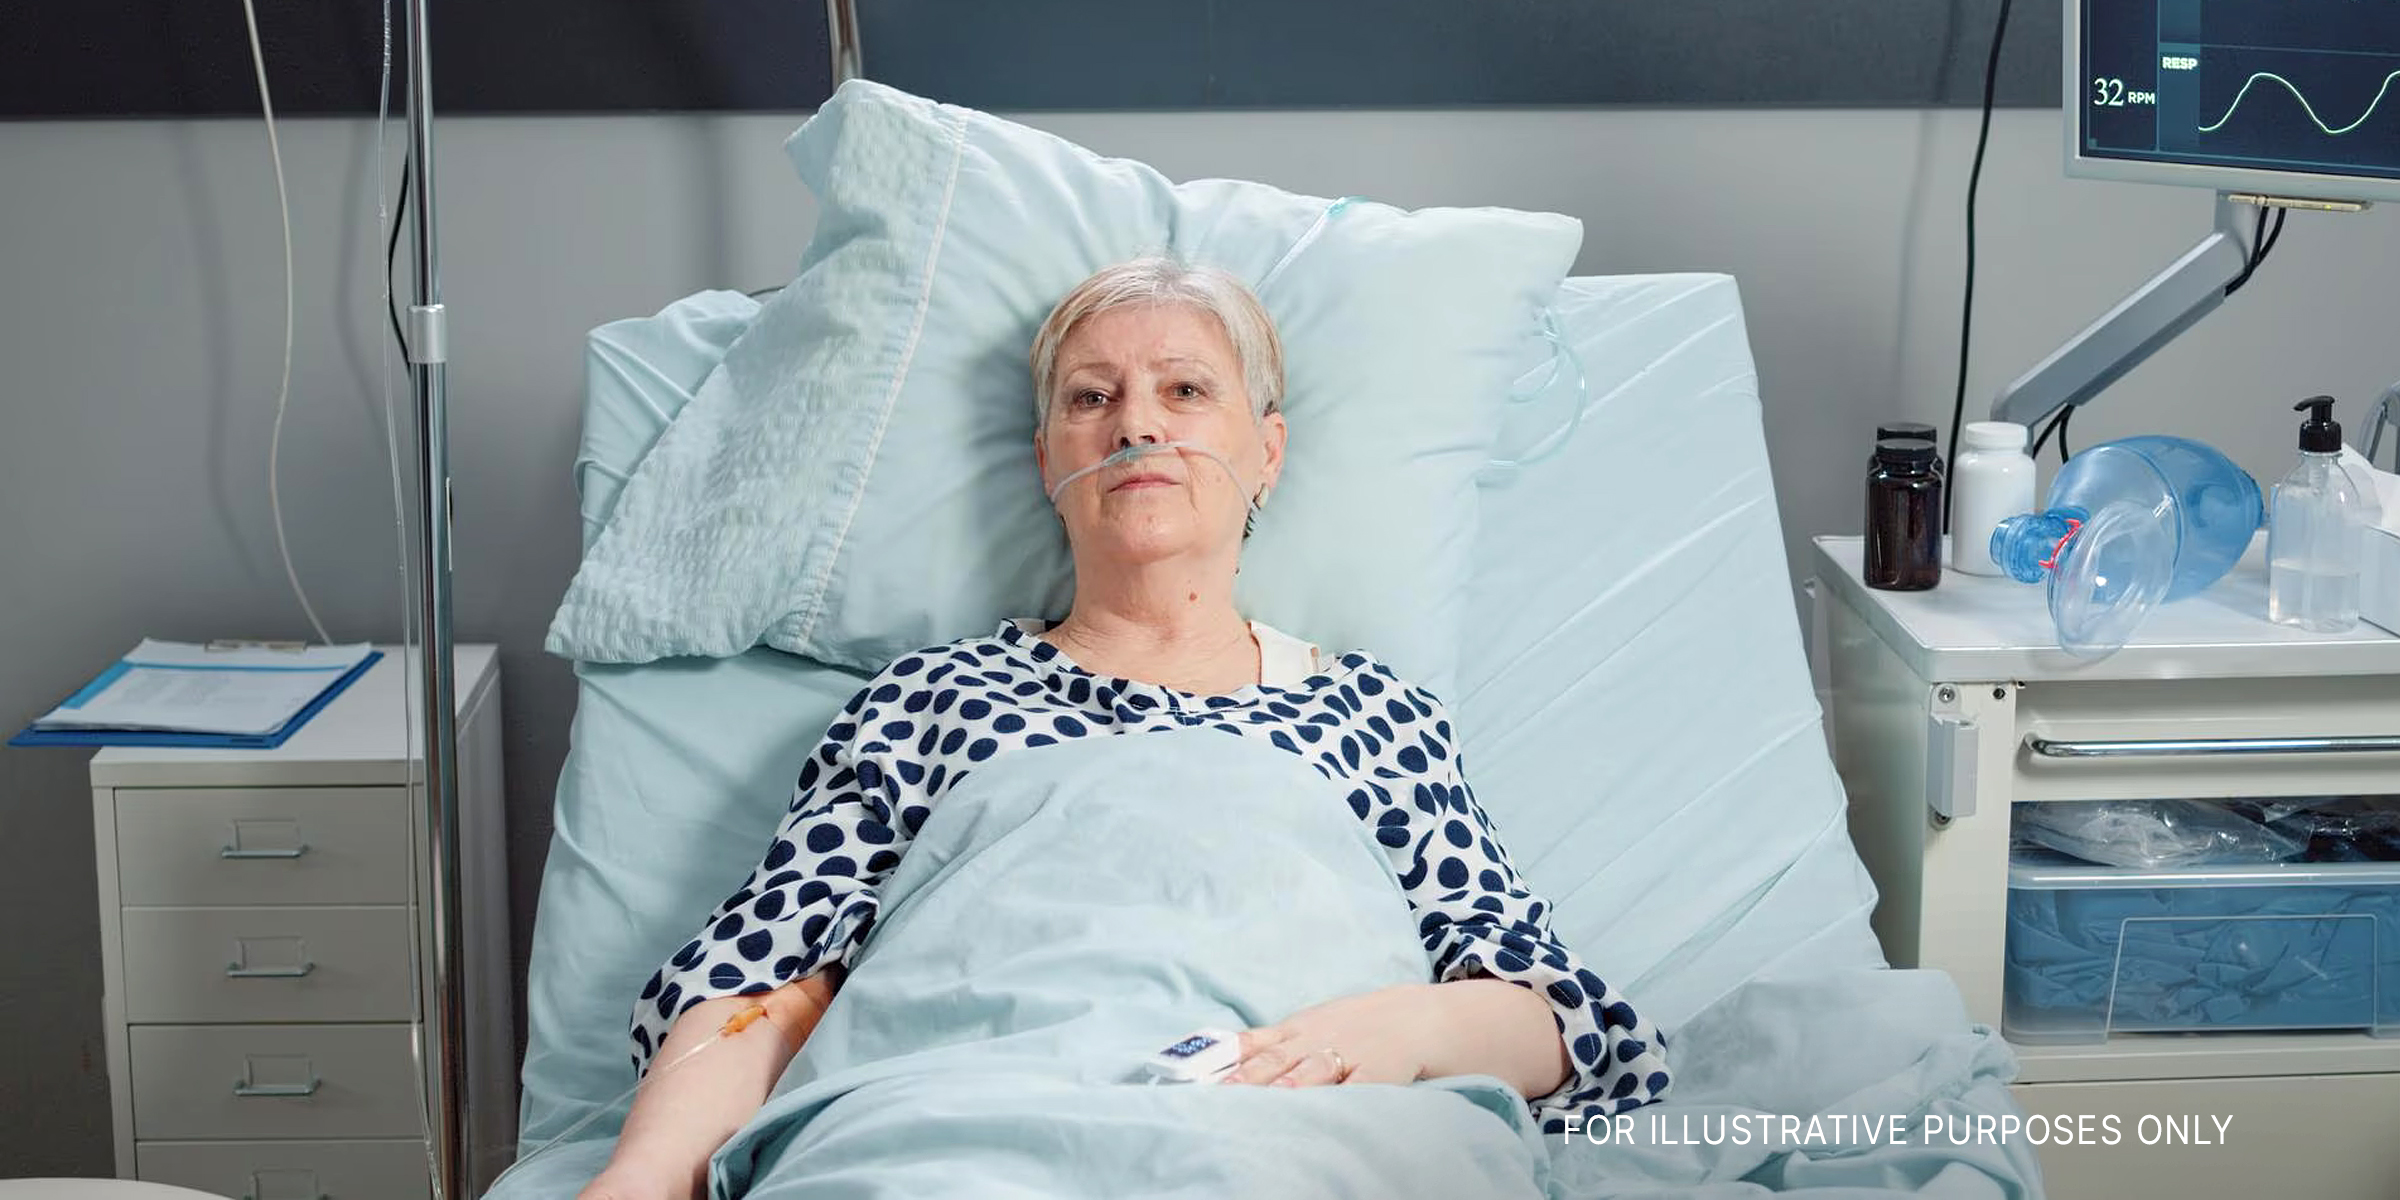 Eine Frau in einem Krankenhausbett | Quelle: freepik.com/DCStudio